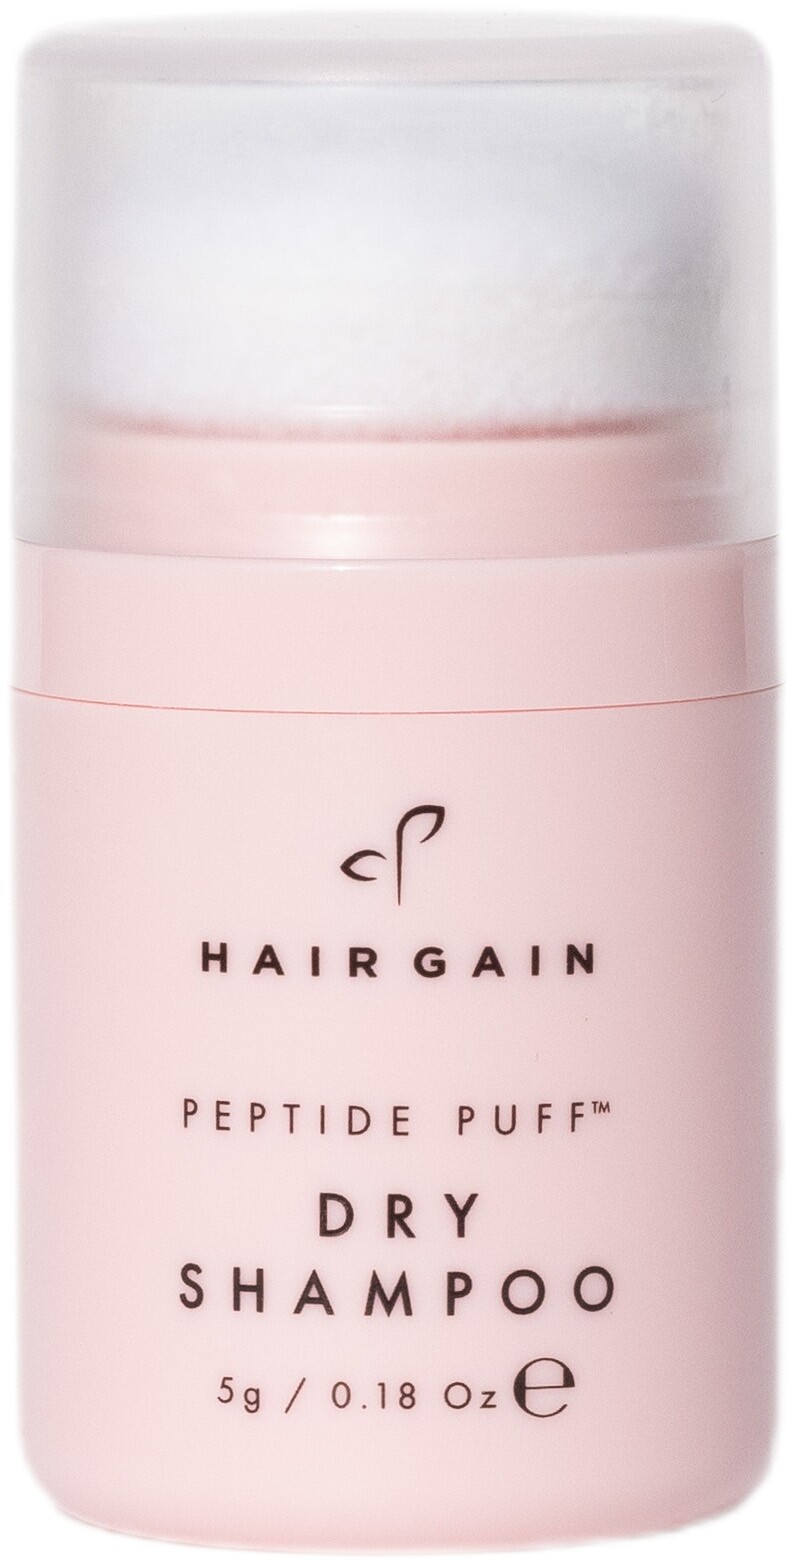 Hair Gain Peptide Puff Dry Shampoo 5g